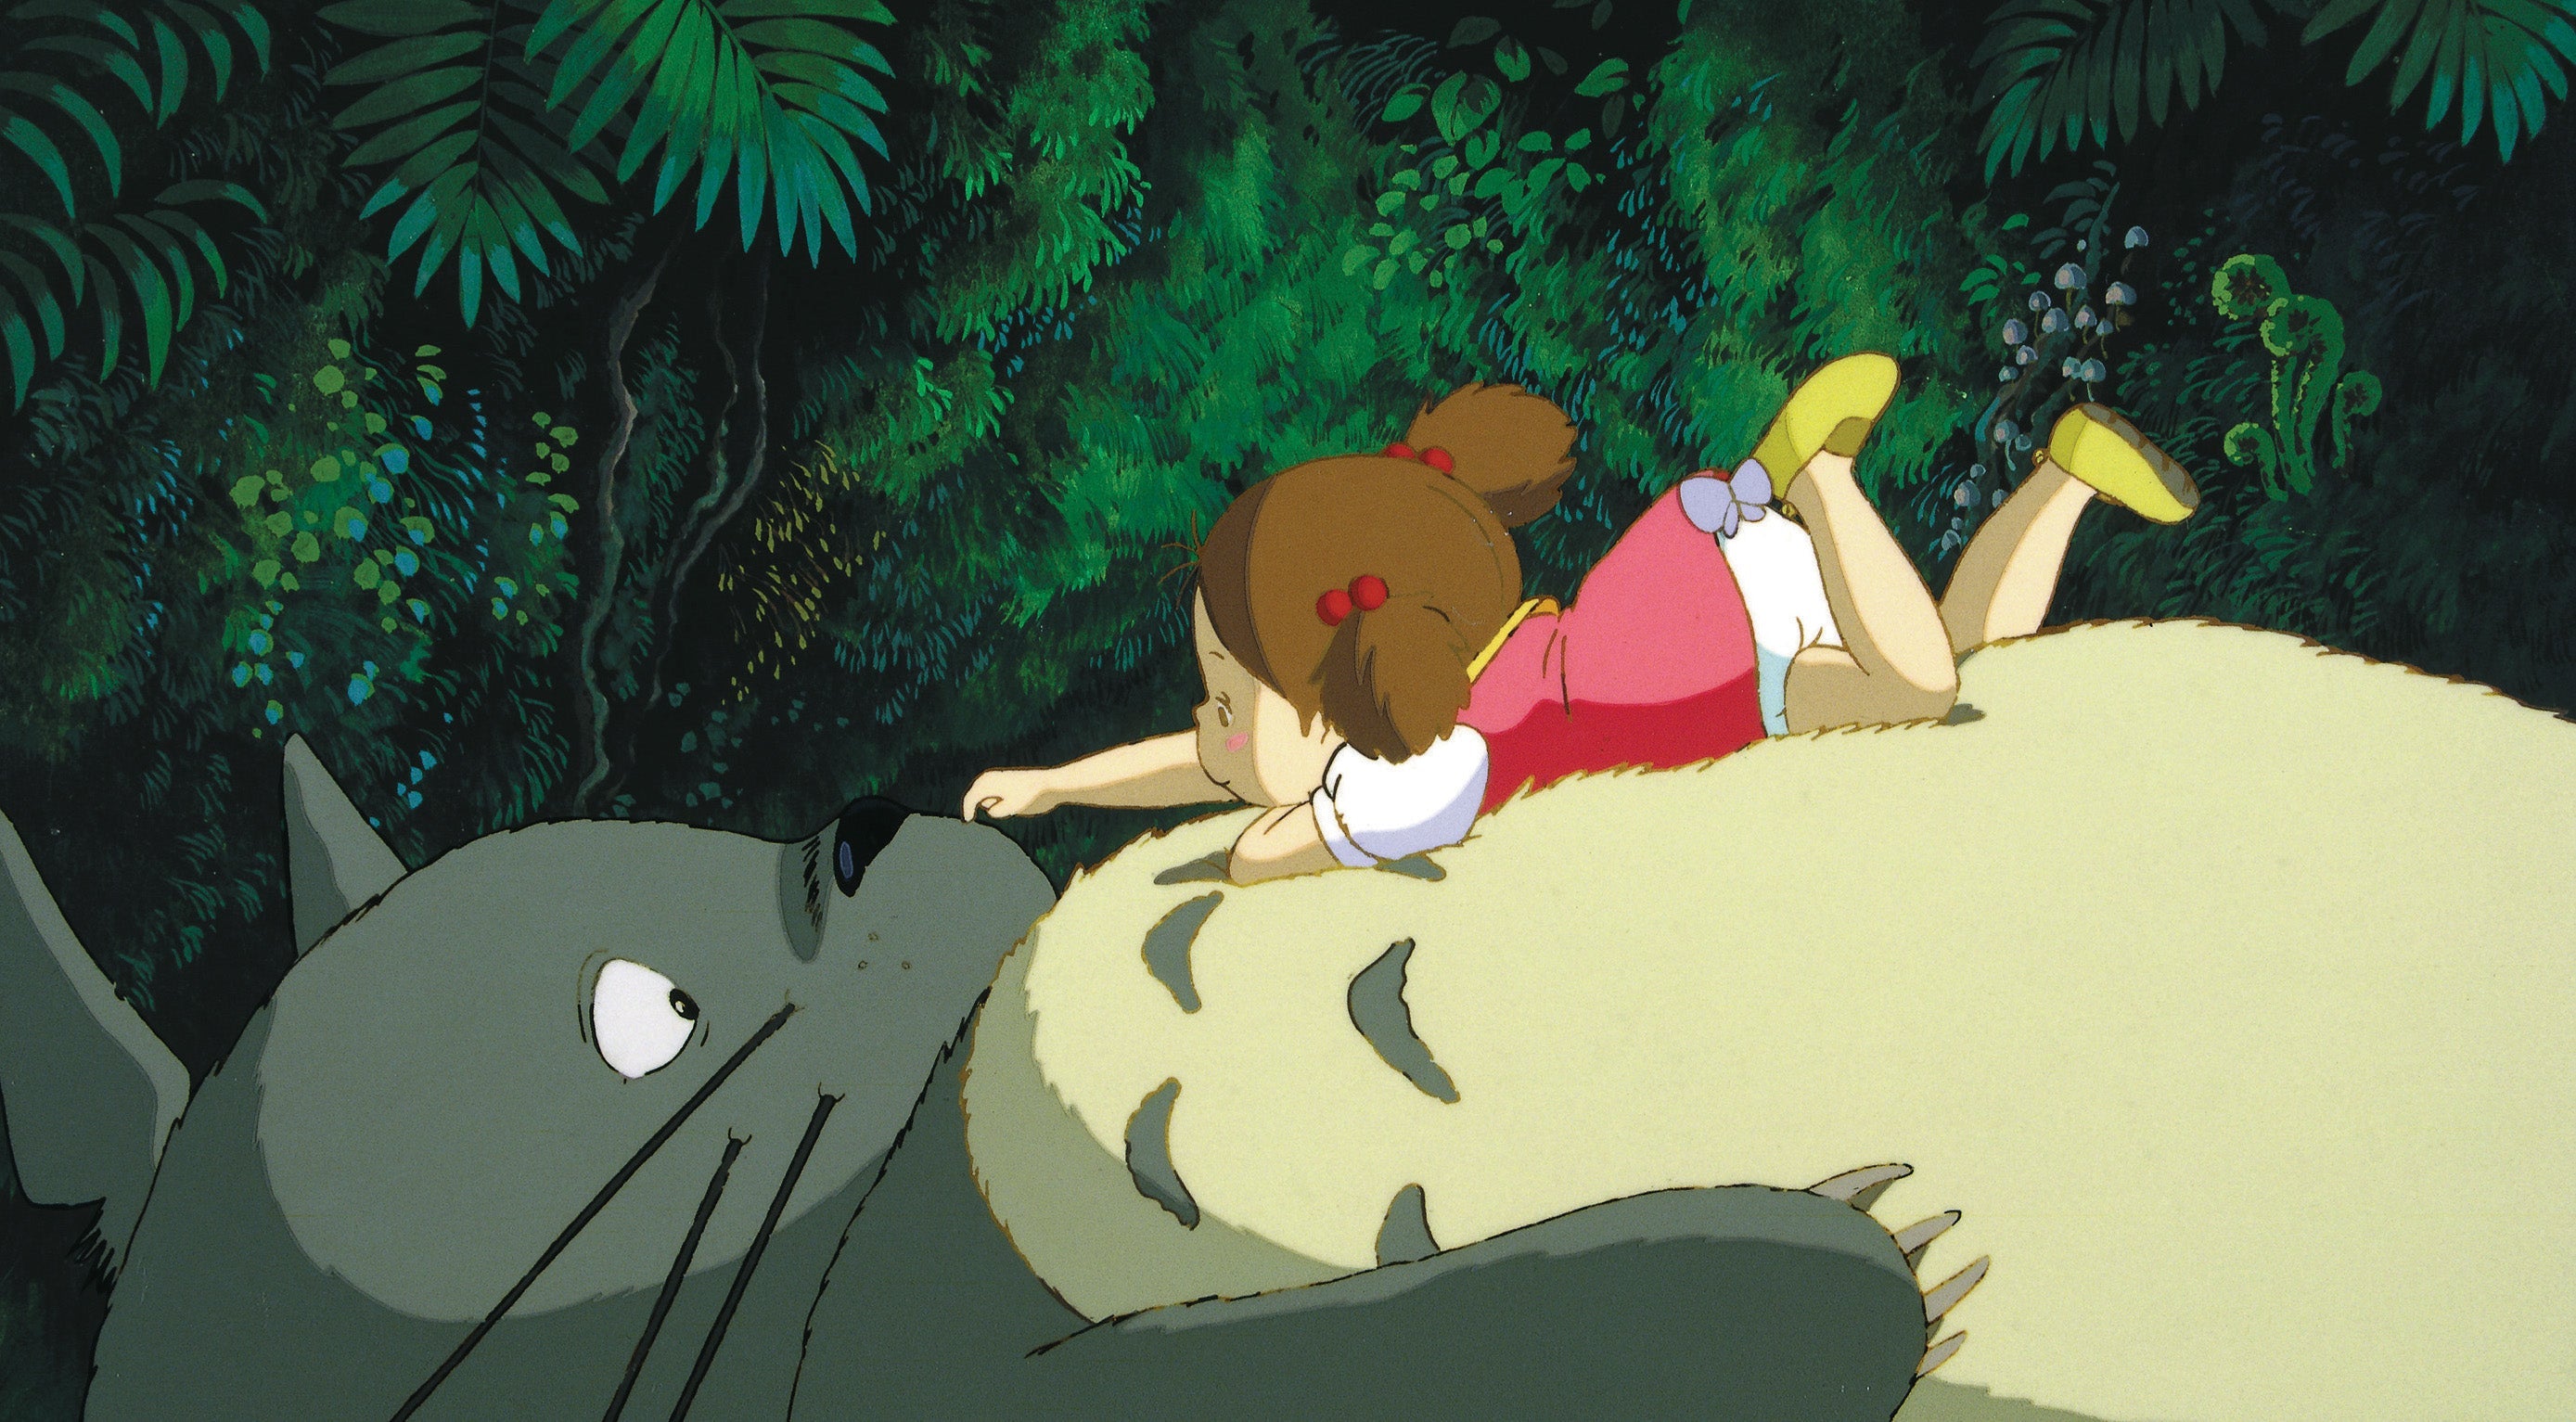 MON VOISIN TOTORO (Il mio vicino Totoro, animé) - MIYAZAKI - dvd